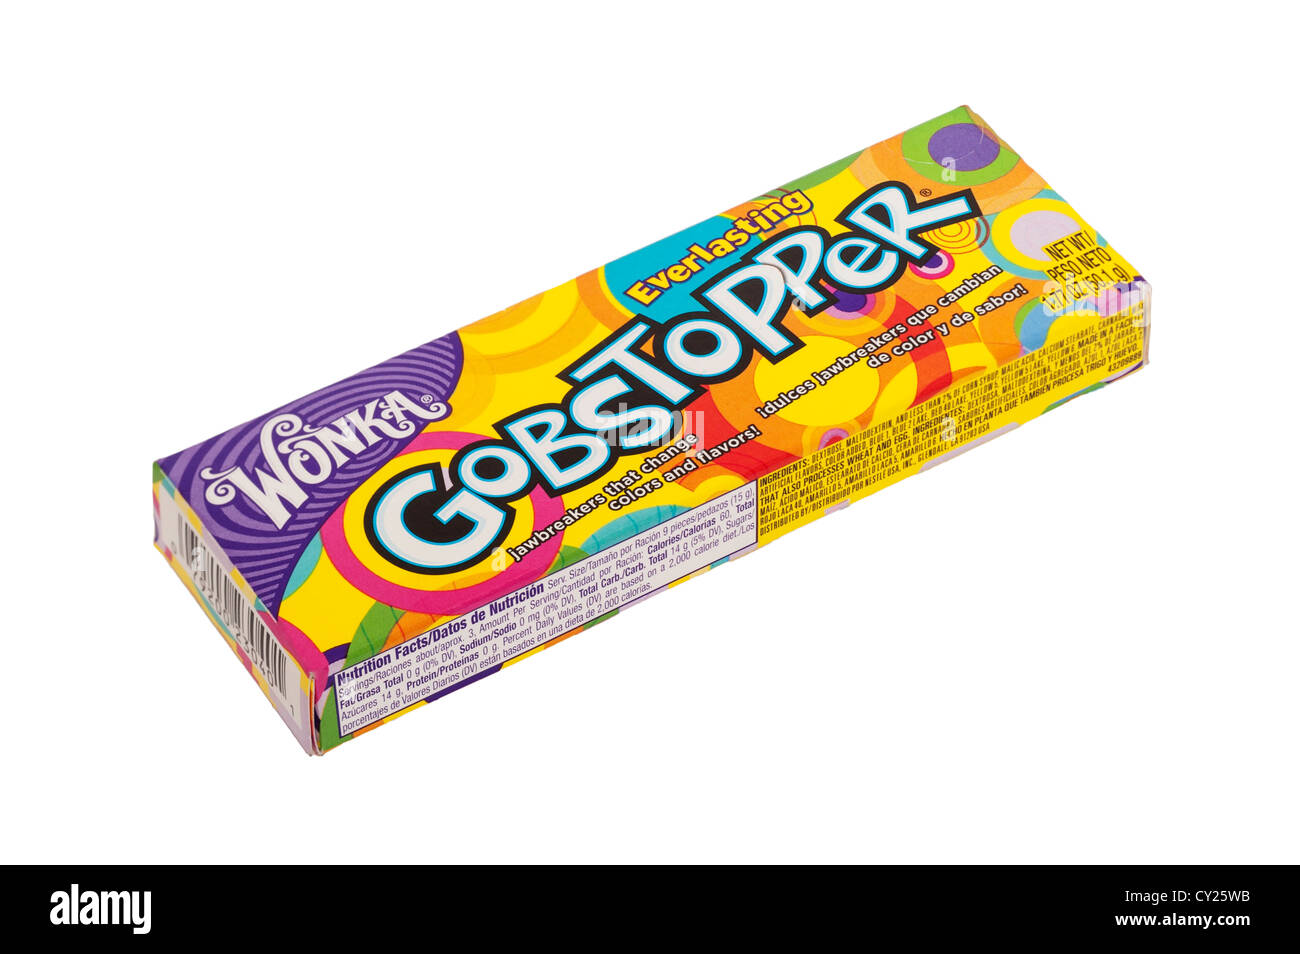 Un pacchetto di Wonka everlasting gobstoppers dolci caramelle su sfondo bianco Foto Stock